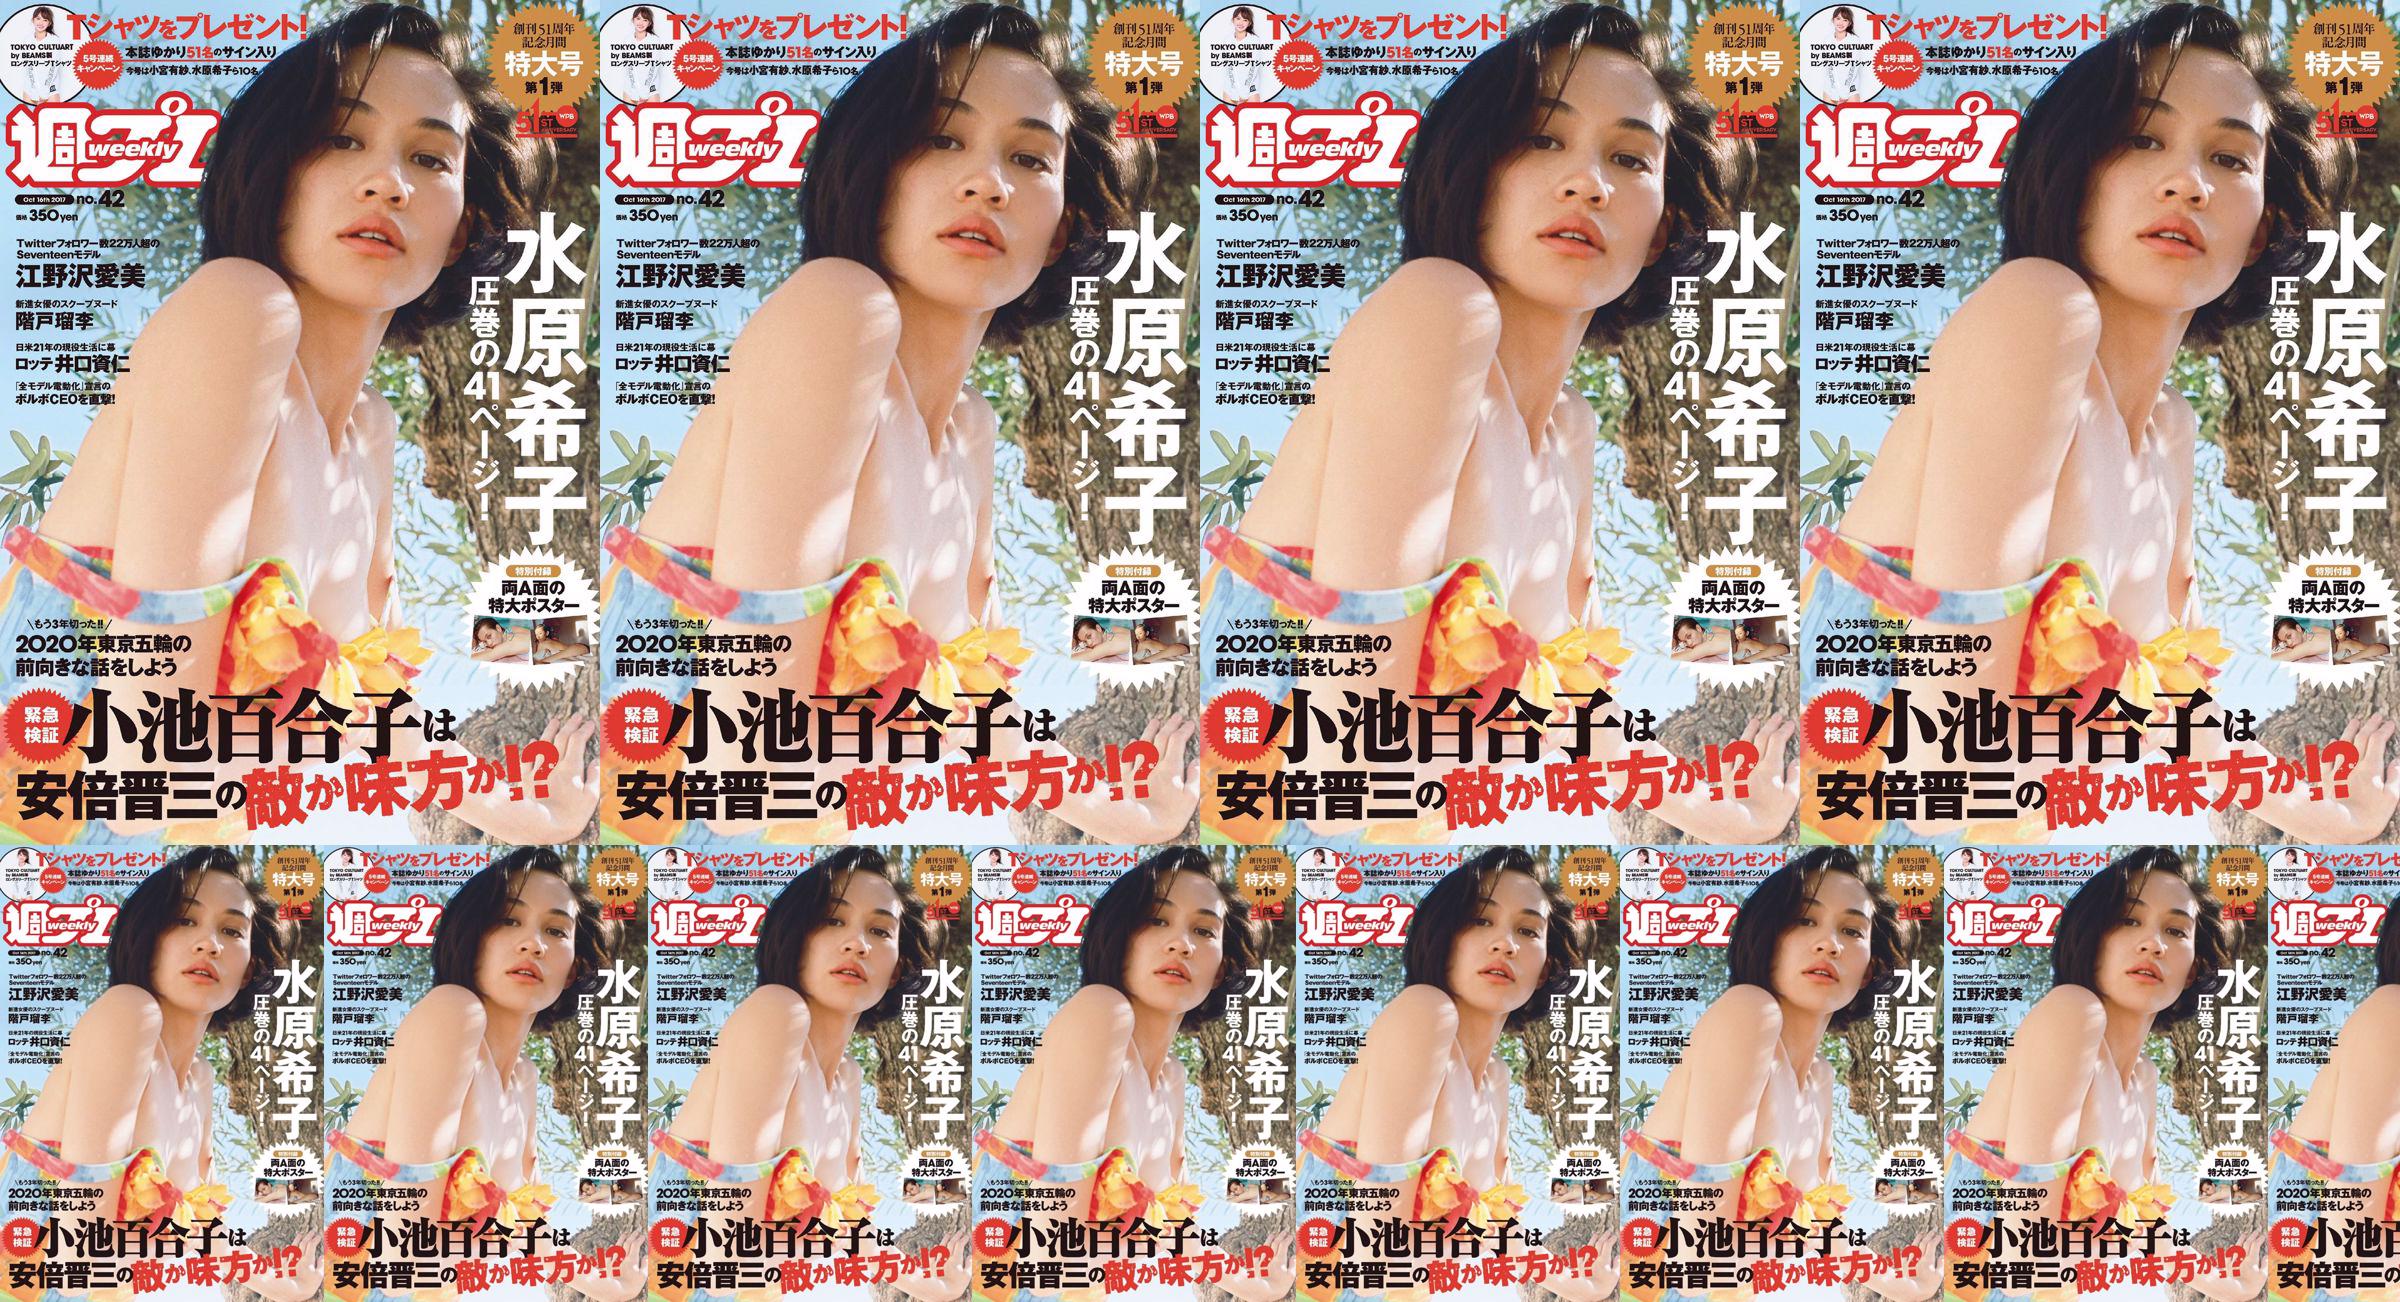 Kiko Mizuhara Manami Enosawa Serina Fukui Miu Nakamura Ruri Shinato [Weekly Playboy] 2017 No.42 Photo Magazine No.c68480 Page 2